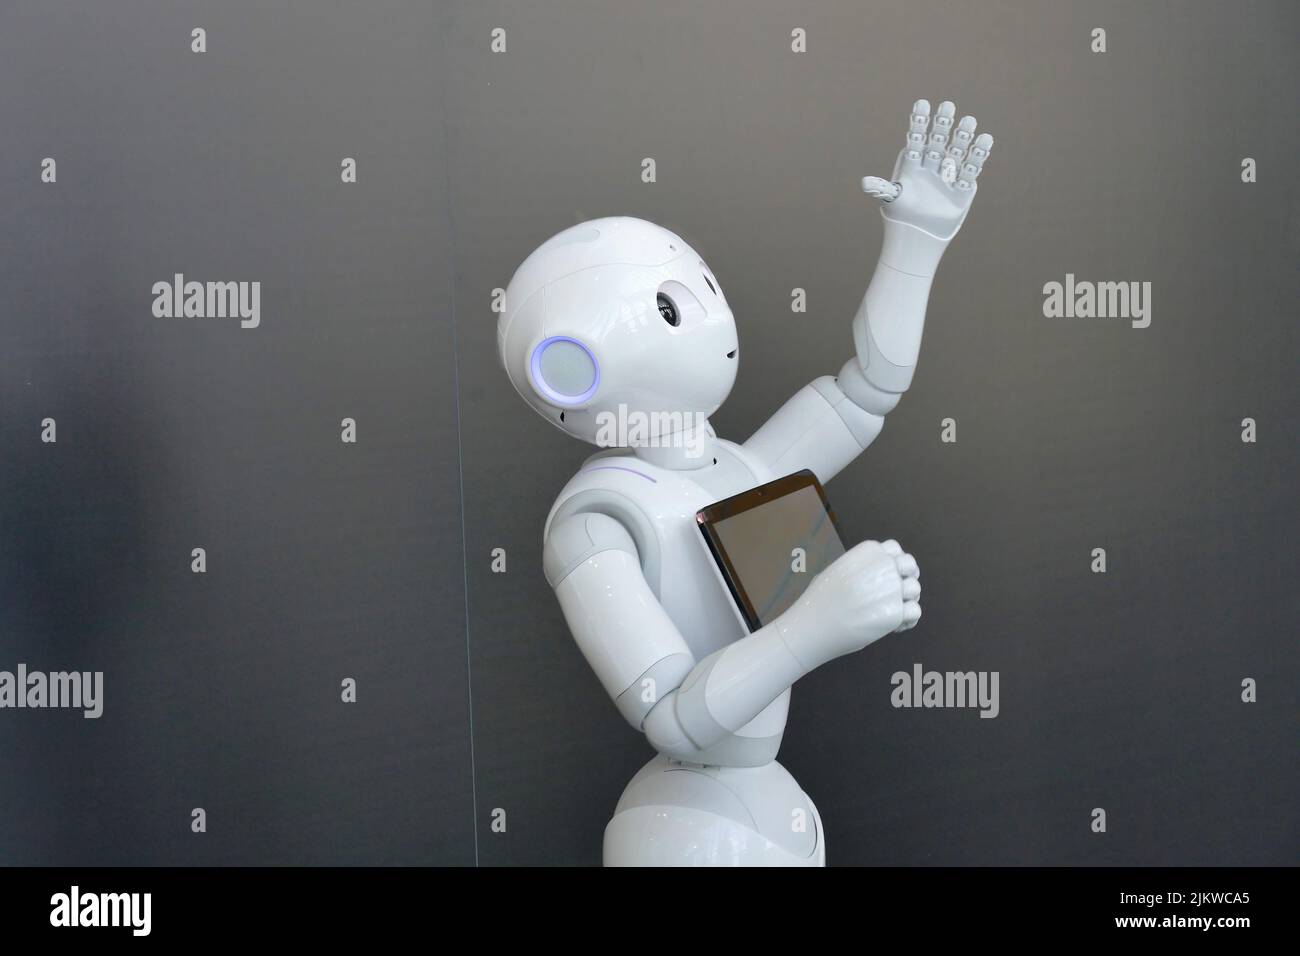 Robot humanoide social Pepper optimizado para la interacción humana a través de la conversación y su pantalla táctil Foto de stock